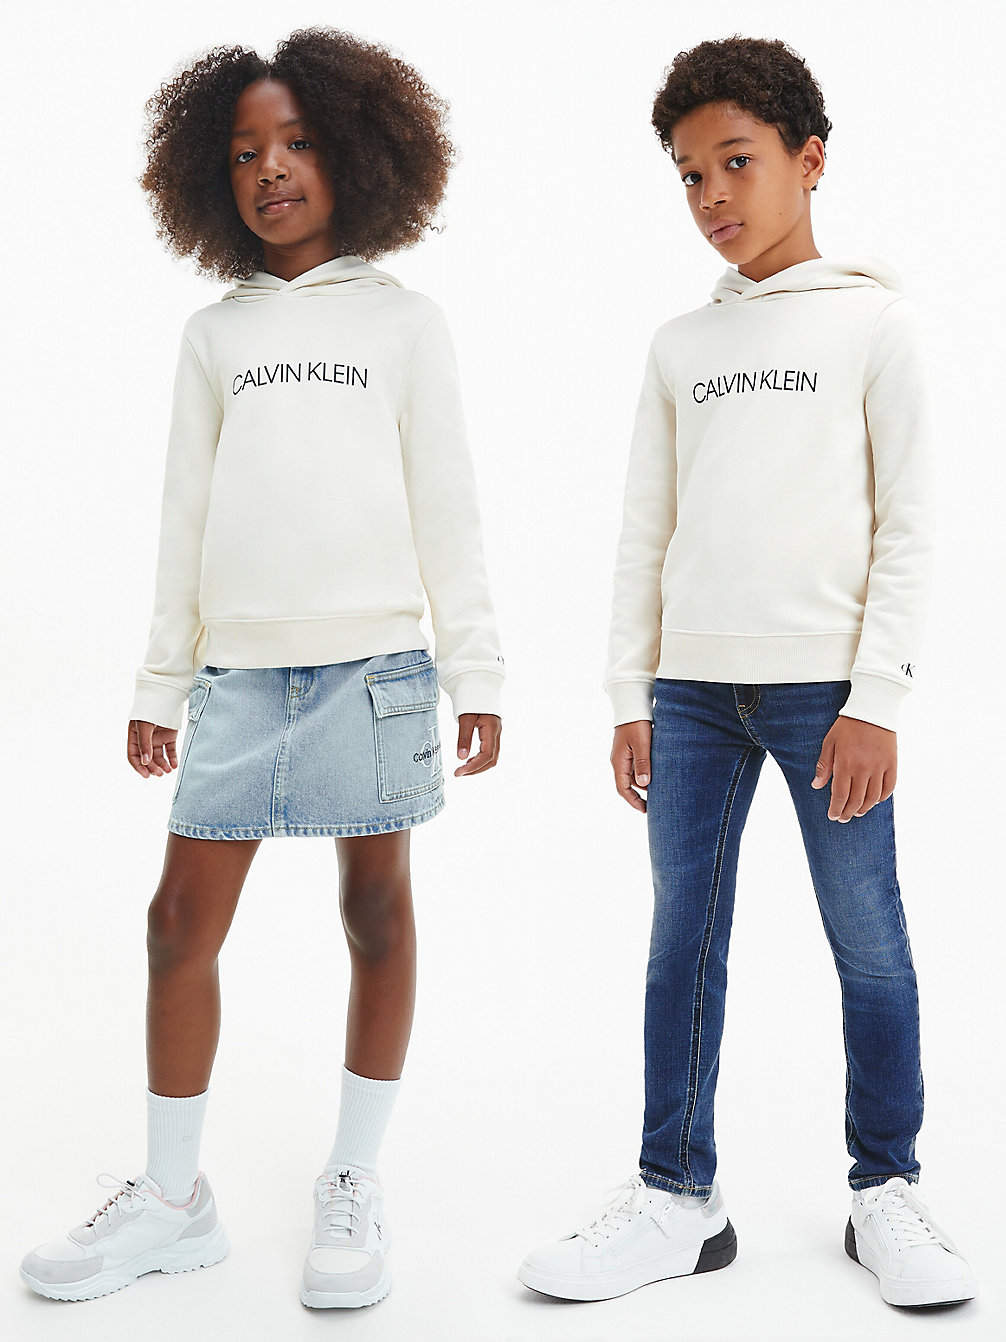 MUSLIN > Bluza Unisex Z Kapturem Z Logo > undefined kids unisex - Calvin Klein